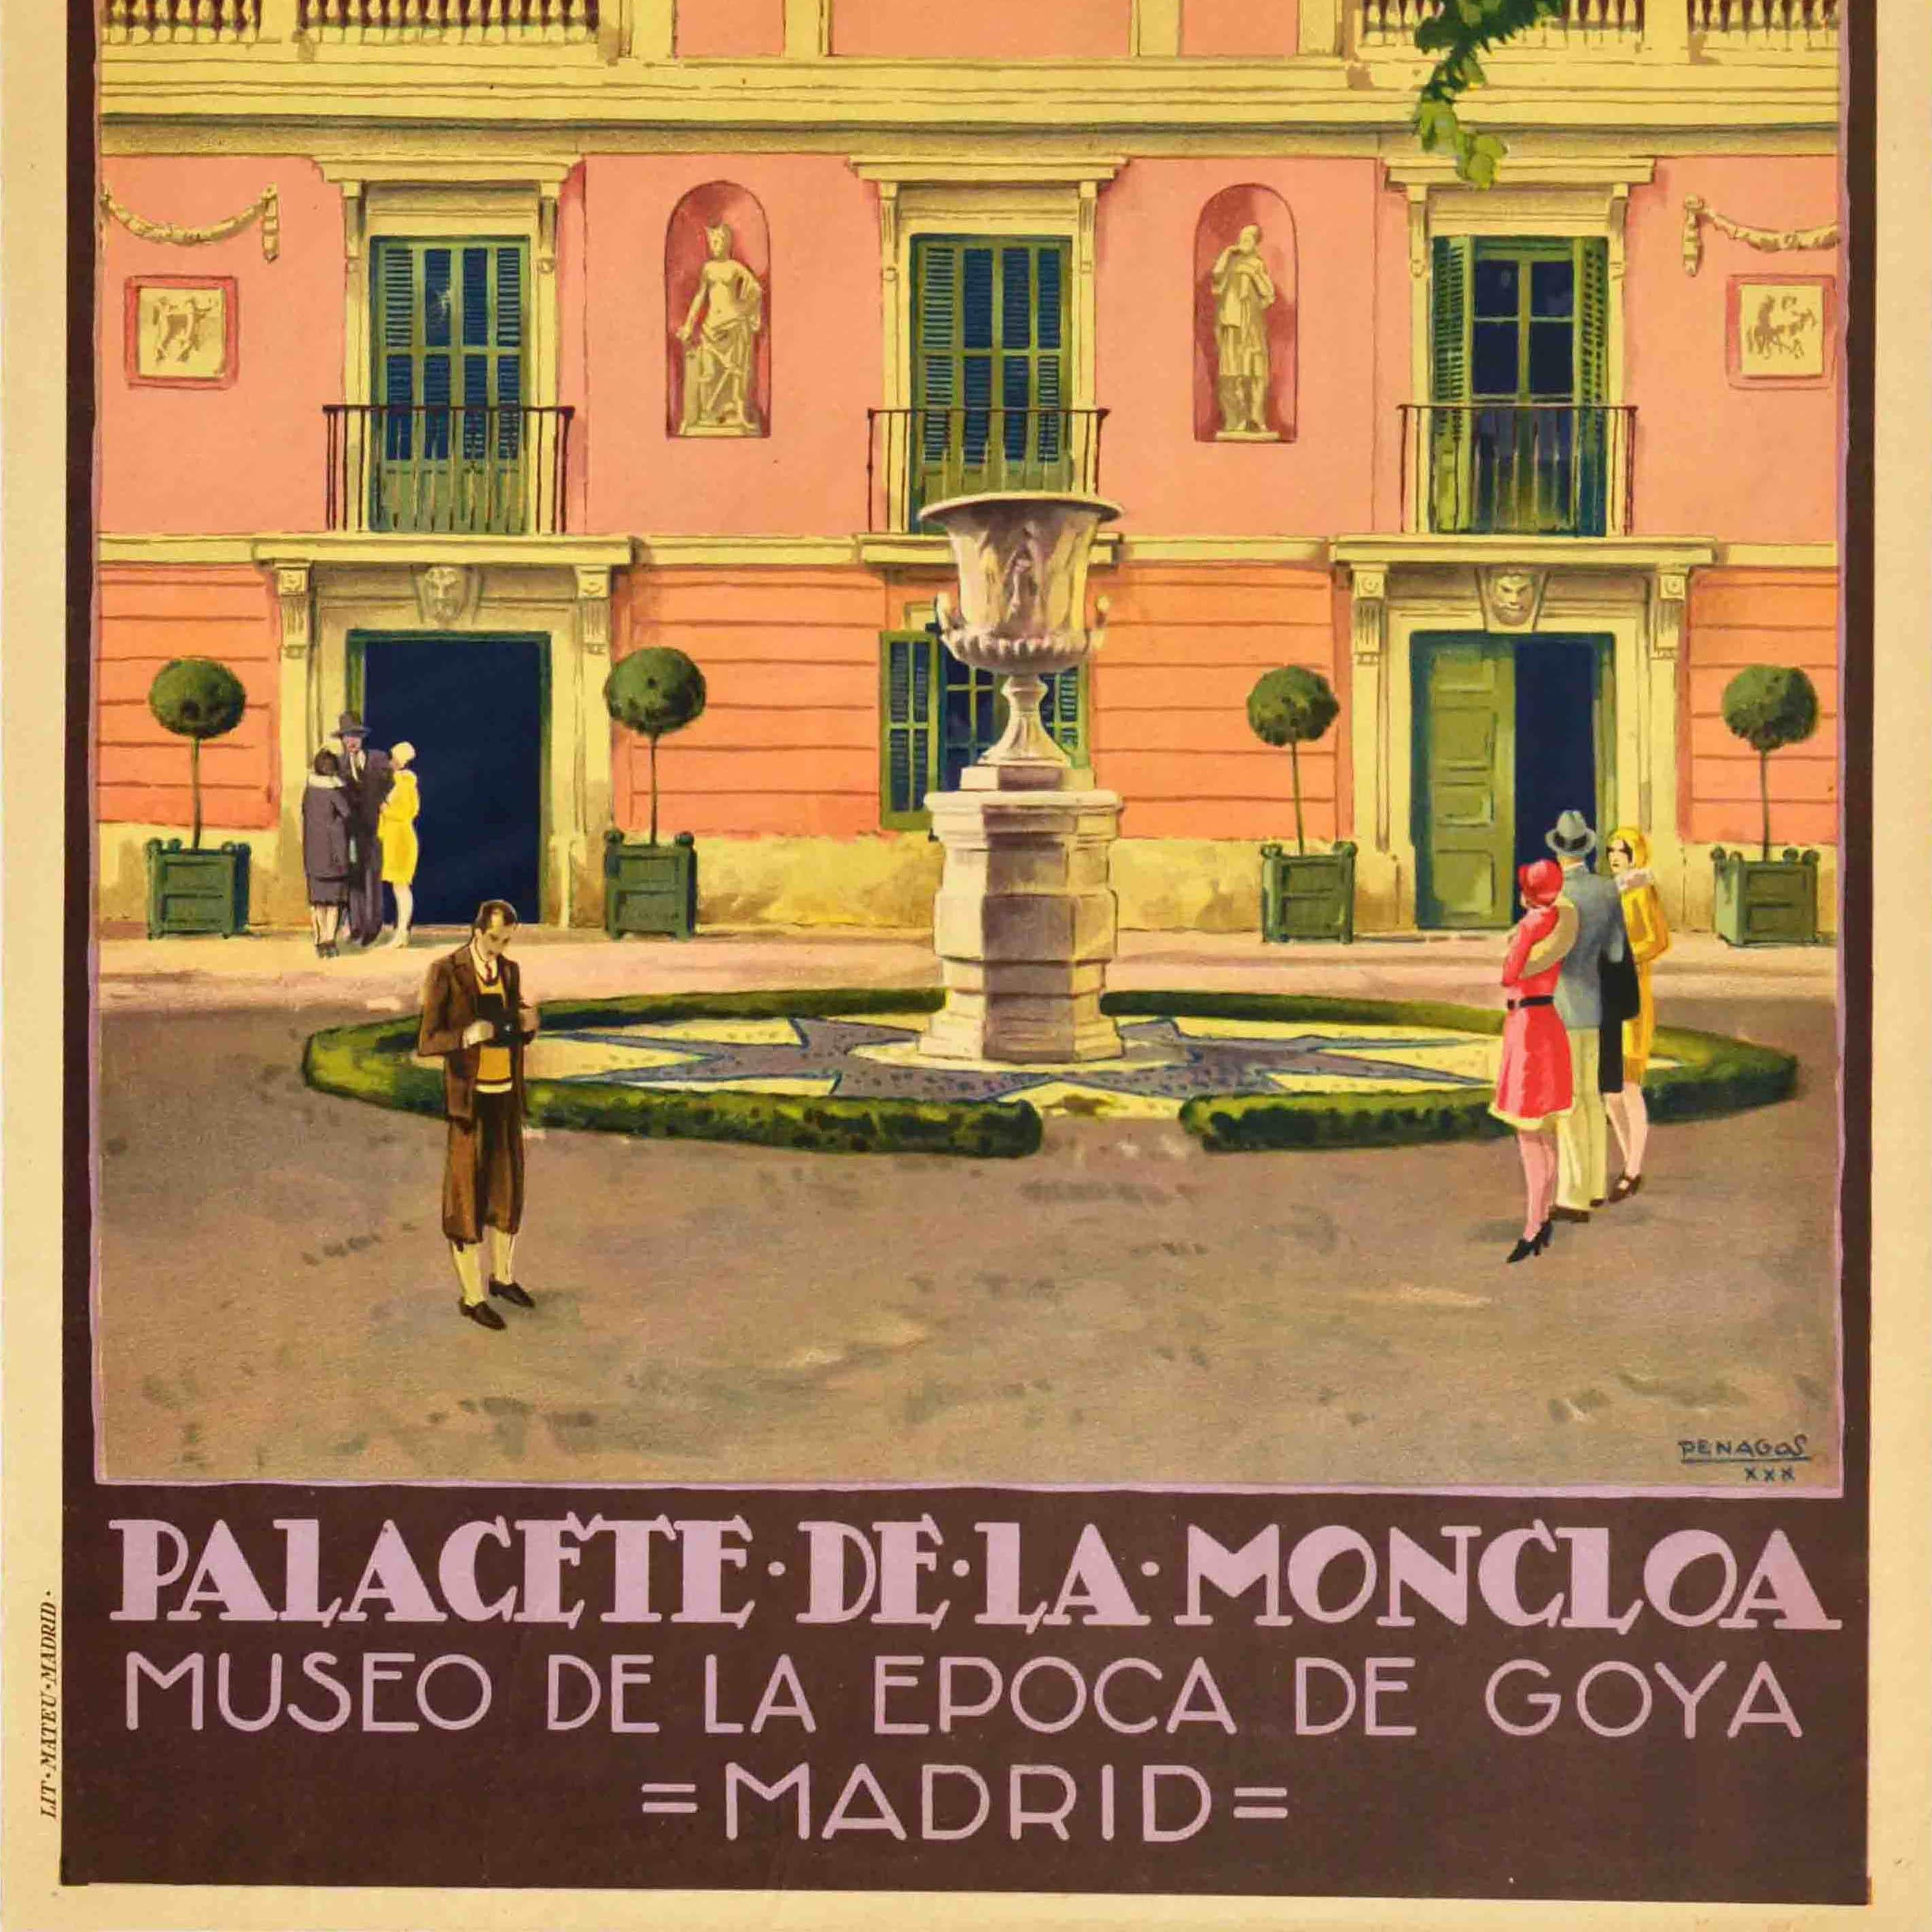 Spanish Original Vintage Travel Poster Palacete De La Moncloa Palace PNT Madrid Spain For Sale